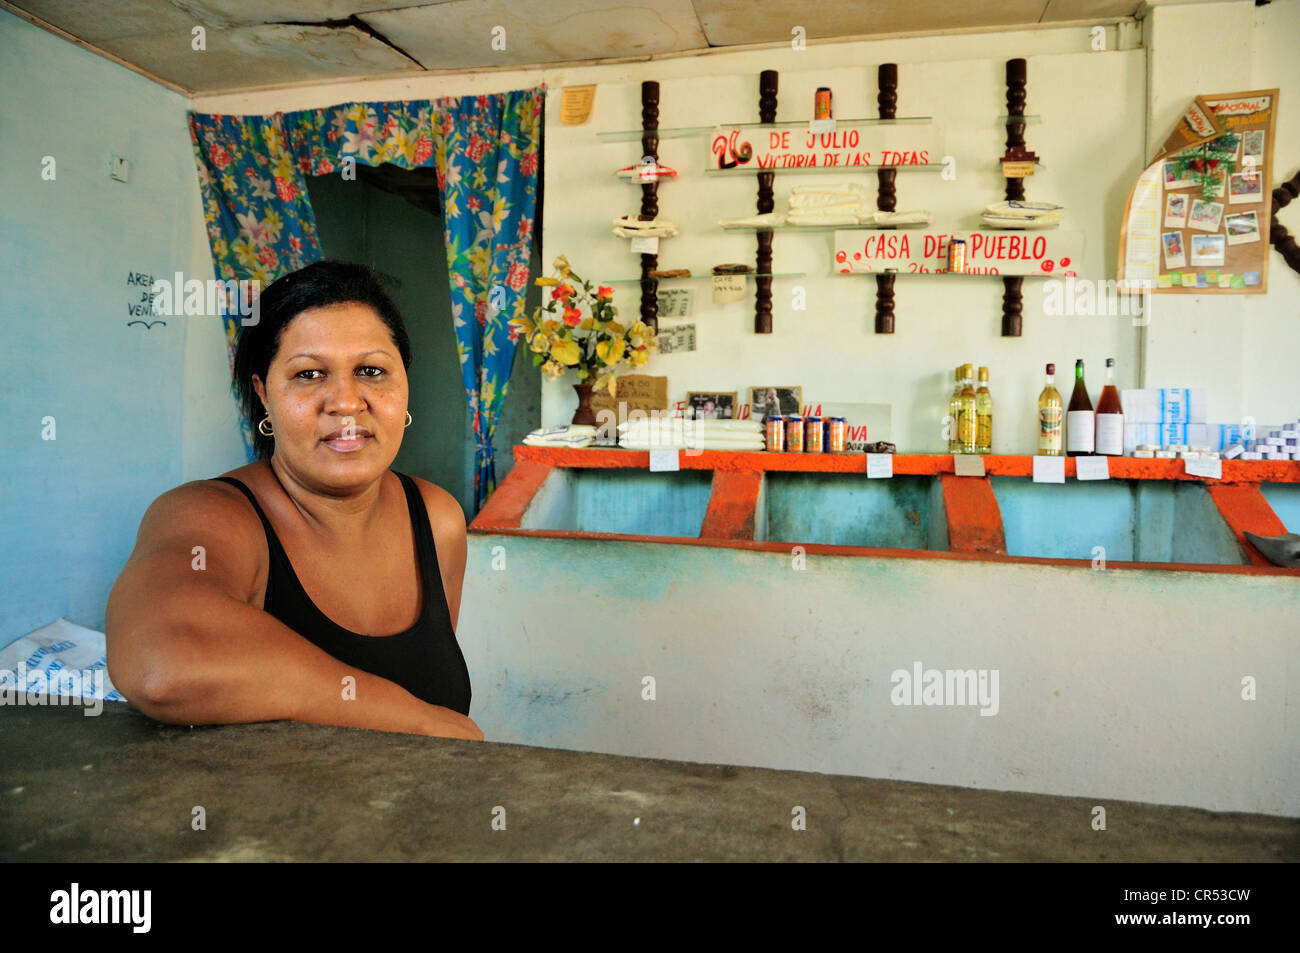 Commessa in una bodega, un governo store che commercializza articoli alimentari per razione coupon, Baracoa, Cuba, Caraibi Foto Stock